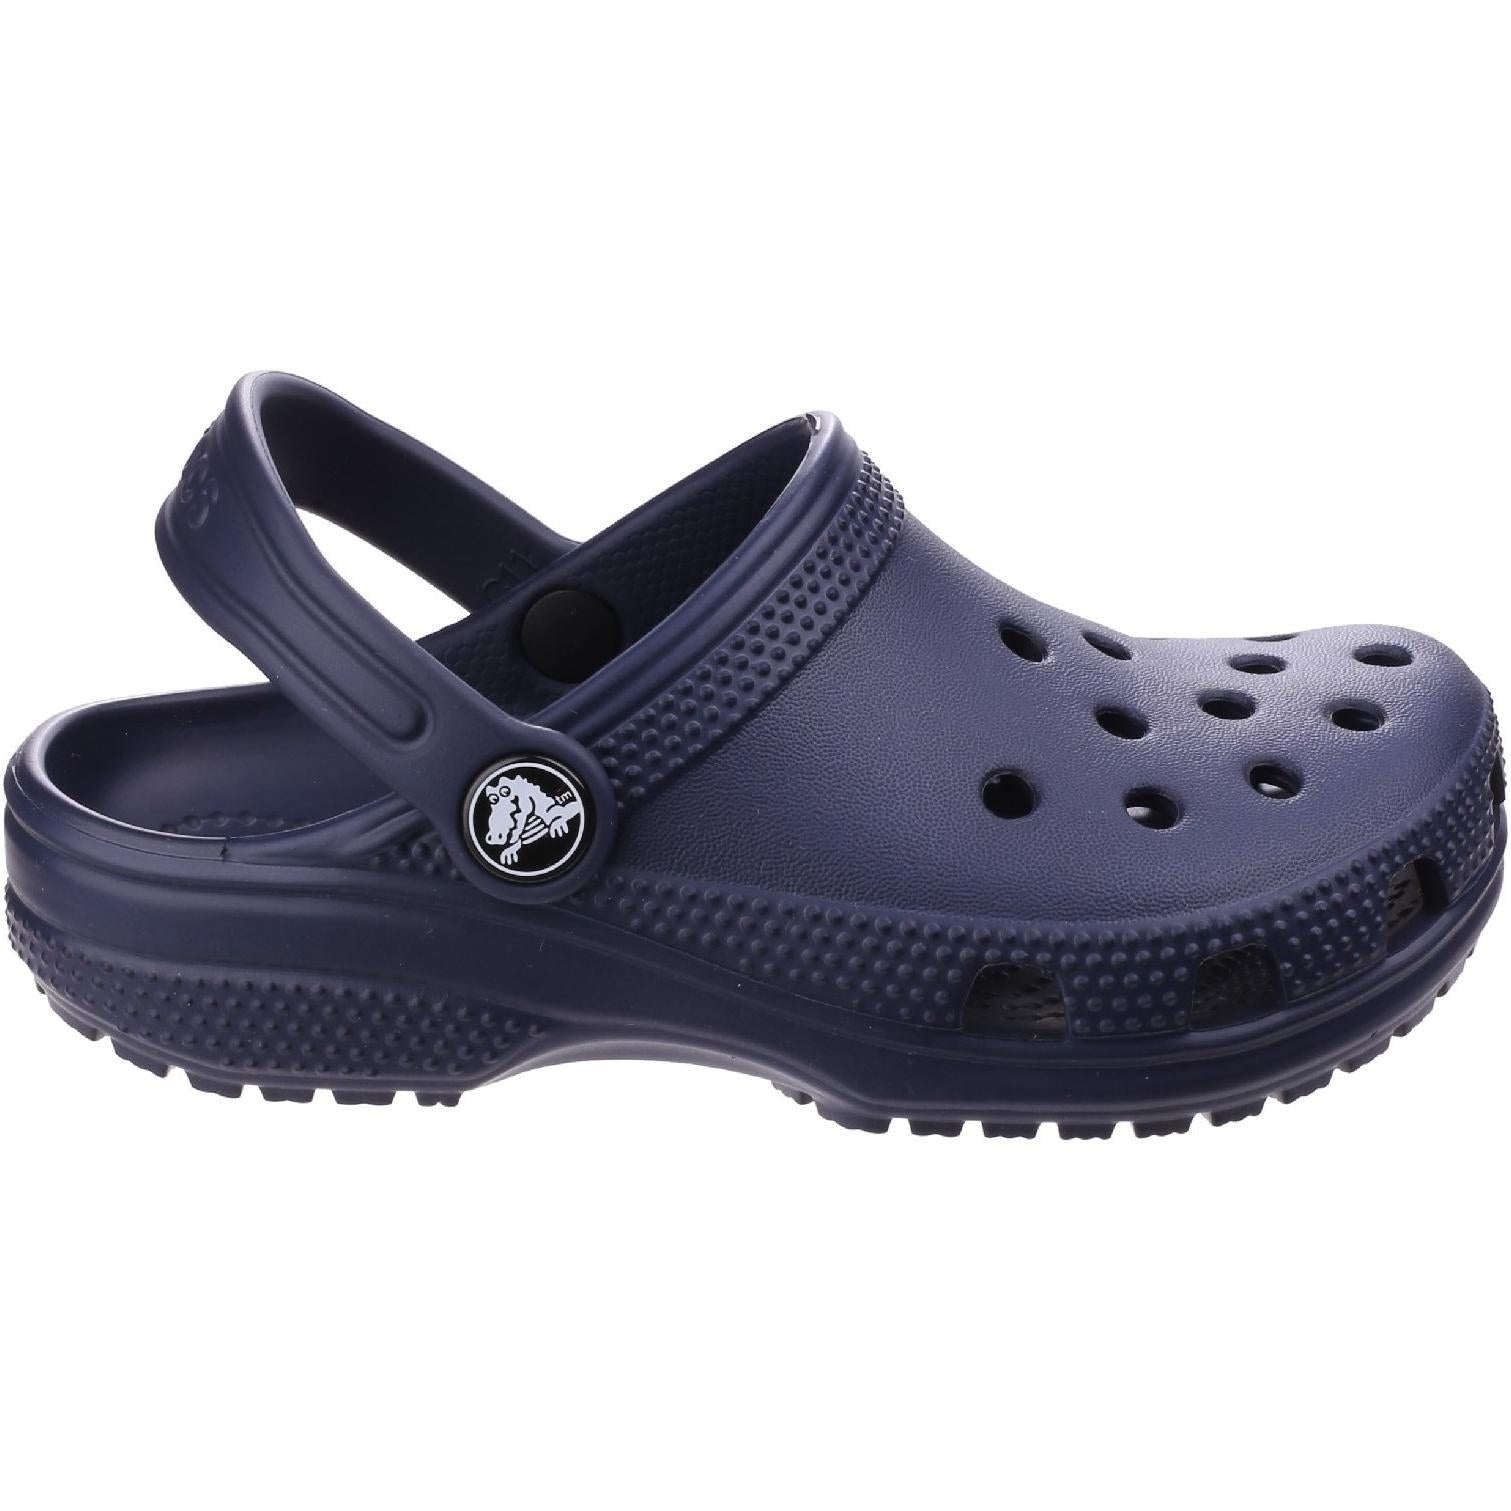 Crocs Kids Classic Clog Slip On Shoes